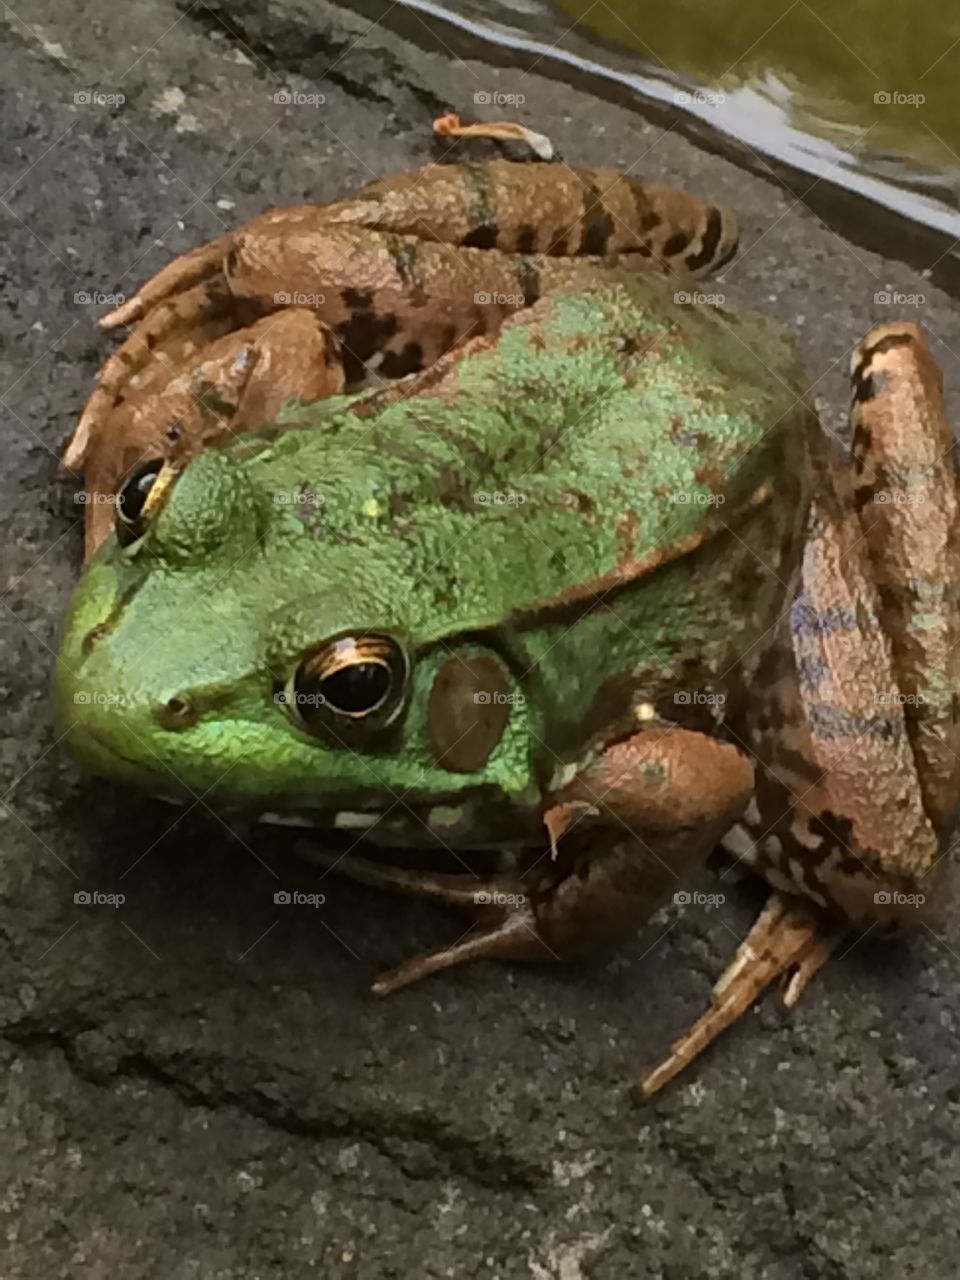 A frog prince